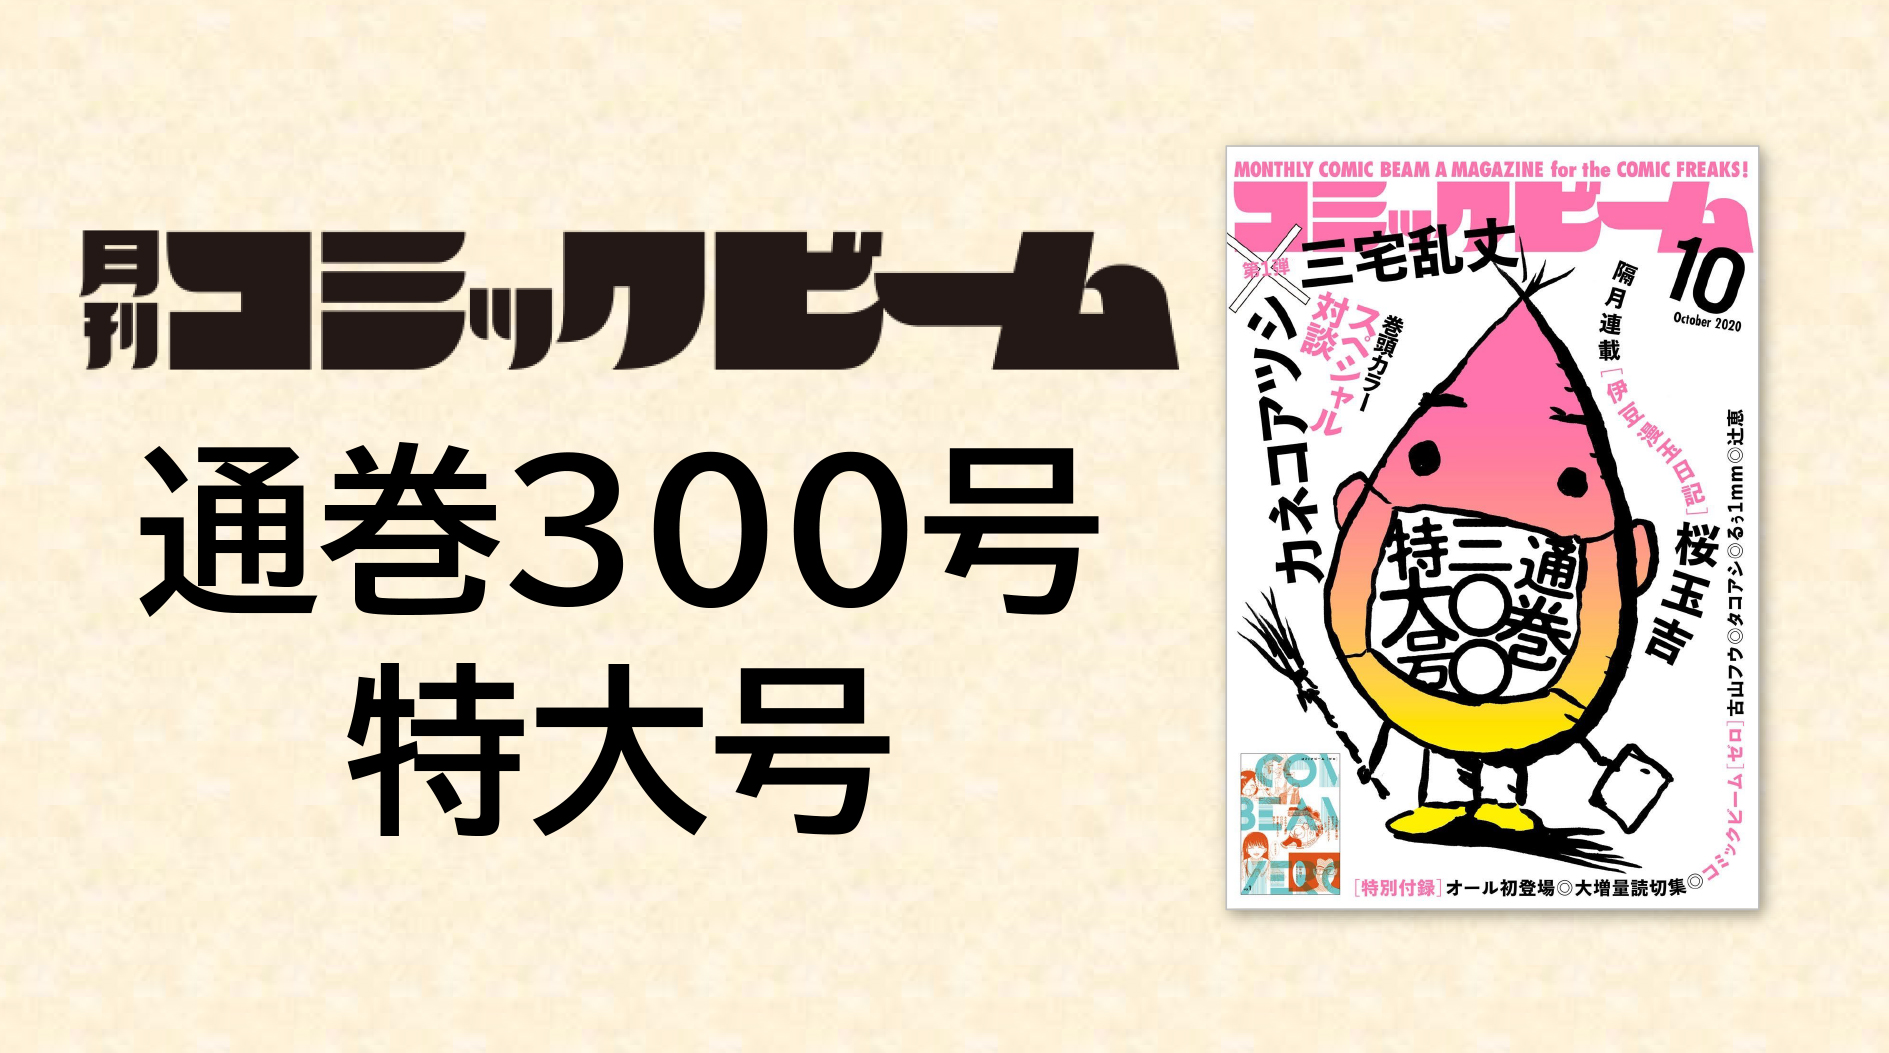 月刊コミックビーム がついに通巻300号 記念企画 特別付録の特大号年9月12発売 株式会社kadokawaのプレスリリース